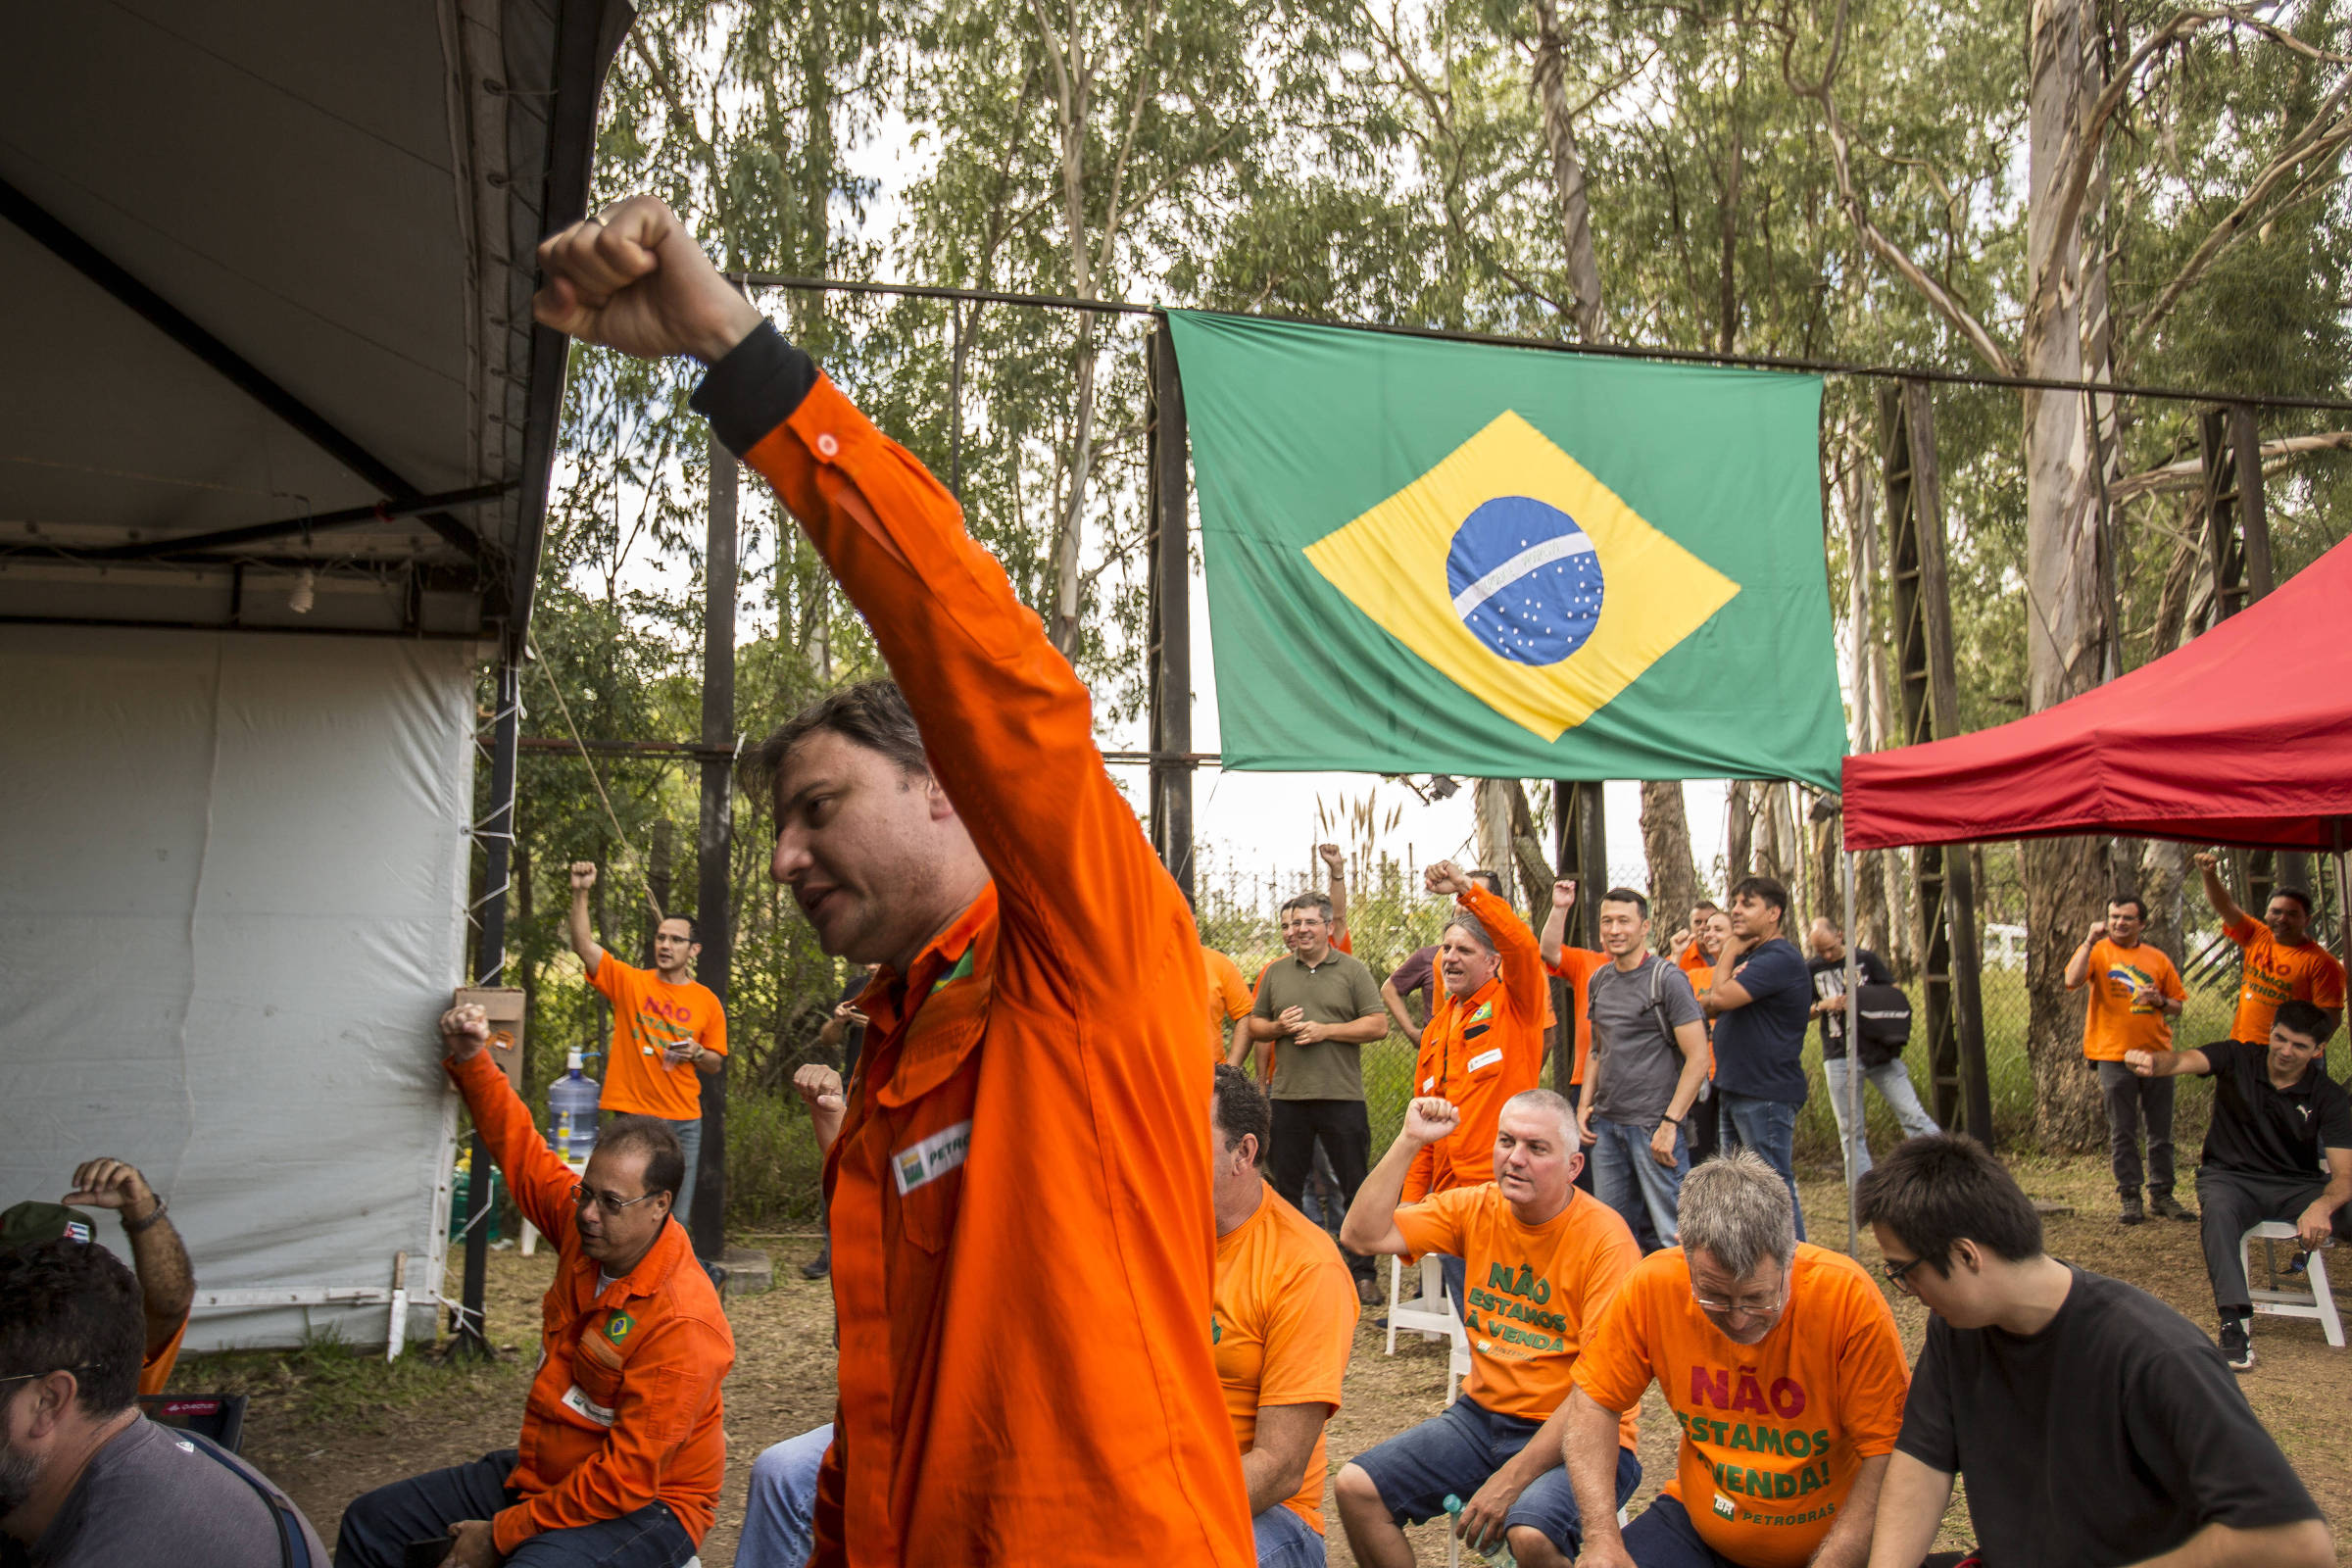 Trabalhadores protestam em frente a fábrica da Petrobras no Paraná que será fechada e que motivou a greve